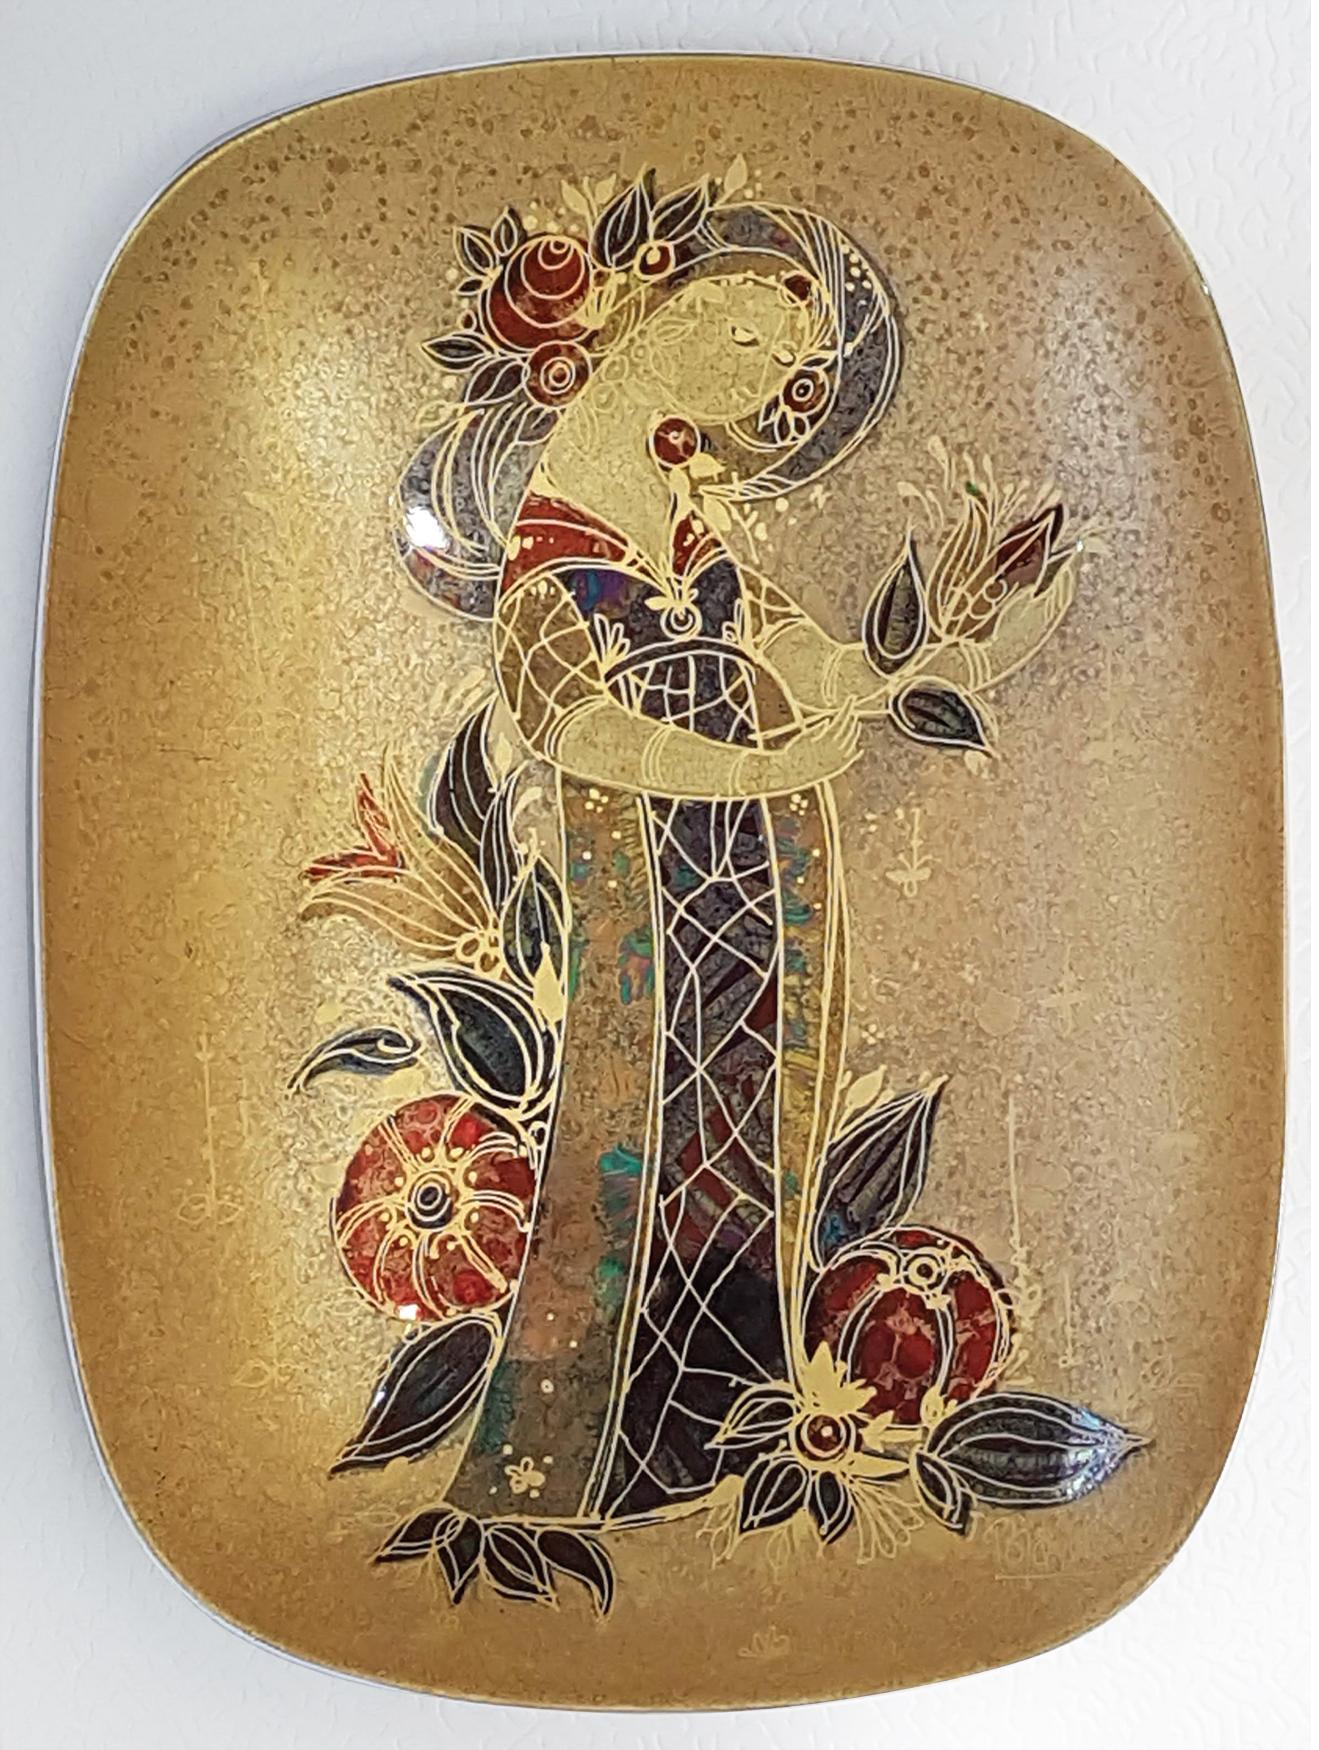 Ein wunderschöner handbemalter Teller von Bjørn Wiinblad Rosenthal, der für die Studio-Keramiklinie hergestellt wurde.
Unterzeichnet von Björn Wiinblad. Verziert mit 24-karätigem Gold und einem schillernden Muster. Ein fantastisches